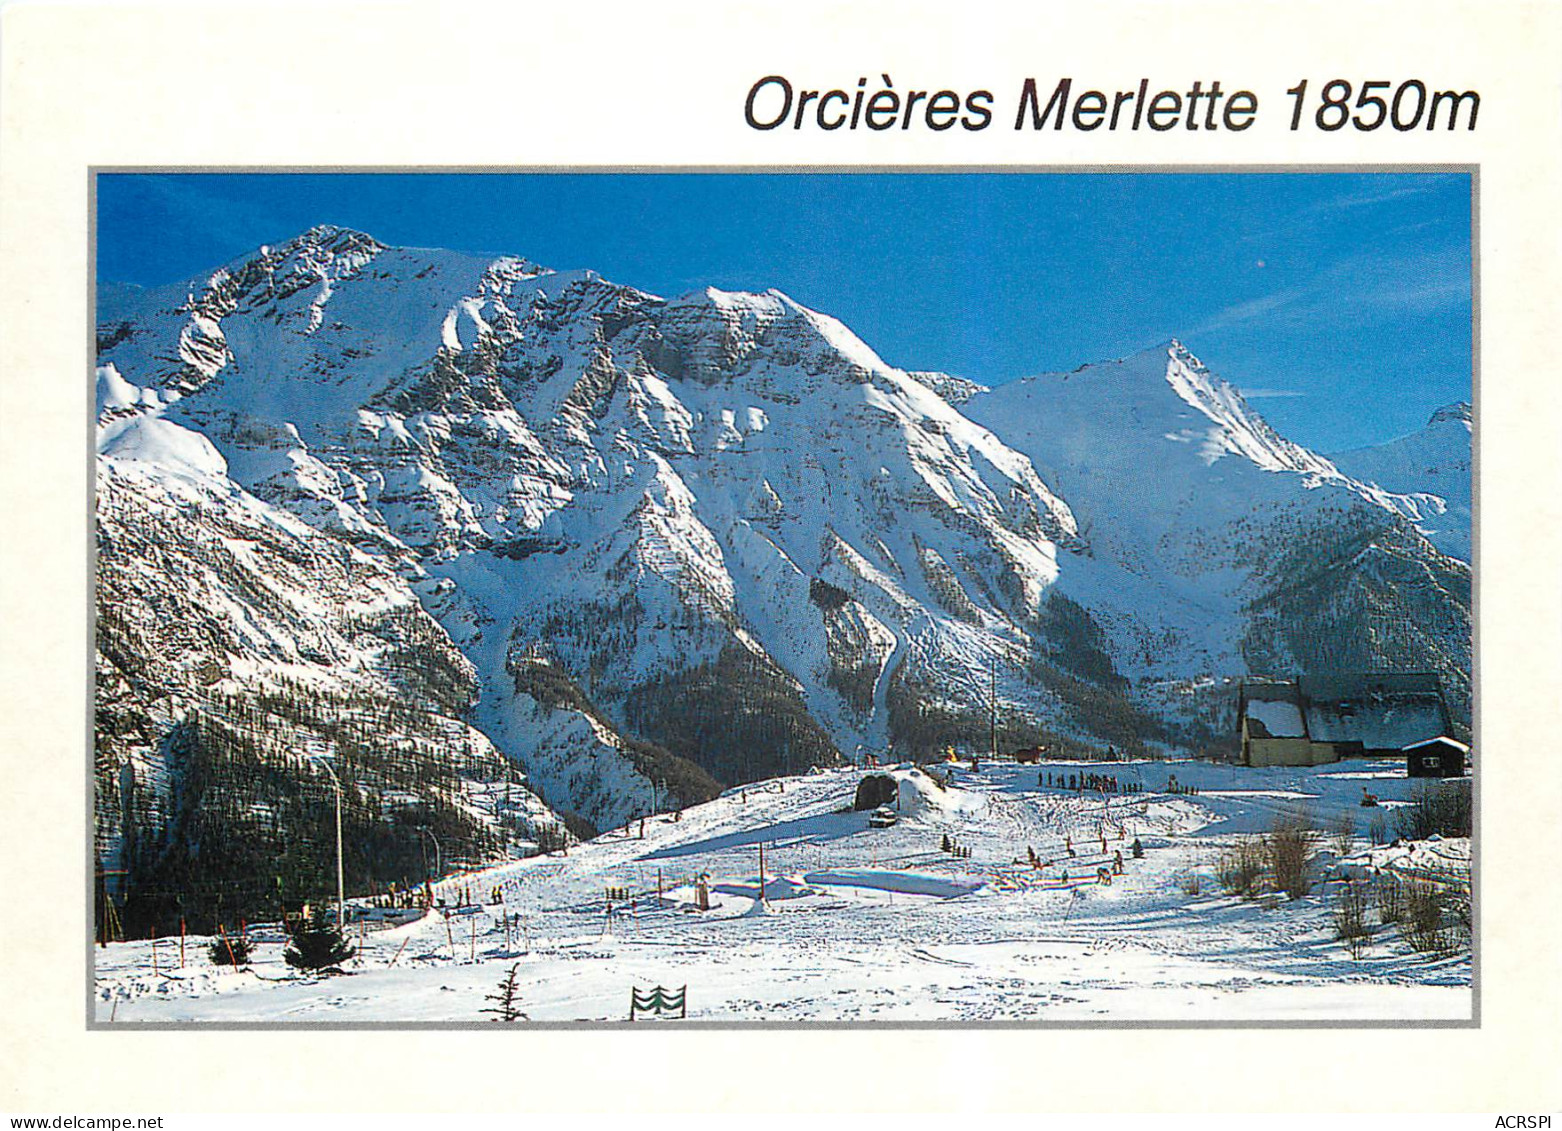 ORCIERES MERLETTE L Ecole De Ski Et Le Jardin D Enfants 13(scan Recto Ver)ME2658 - Orcieres